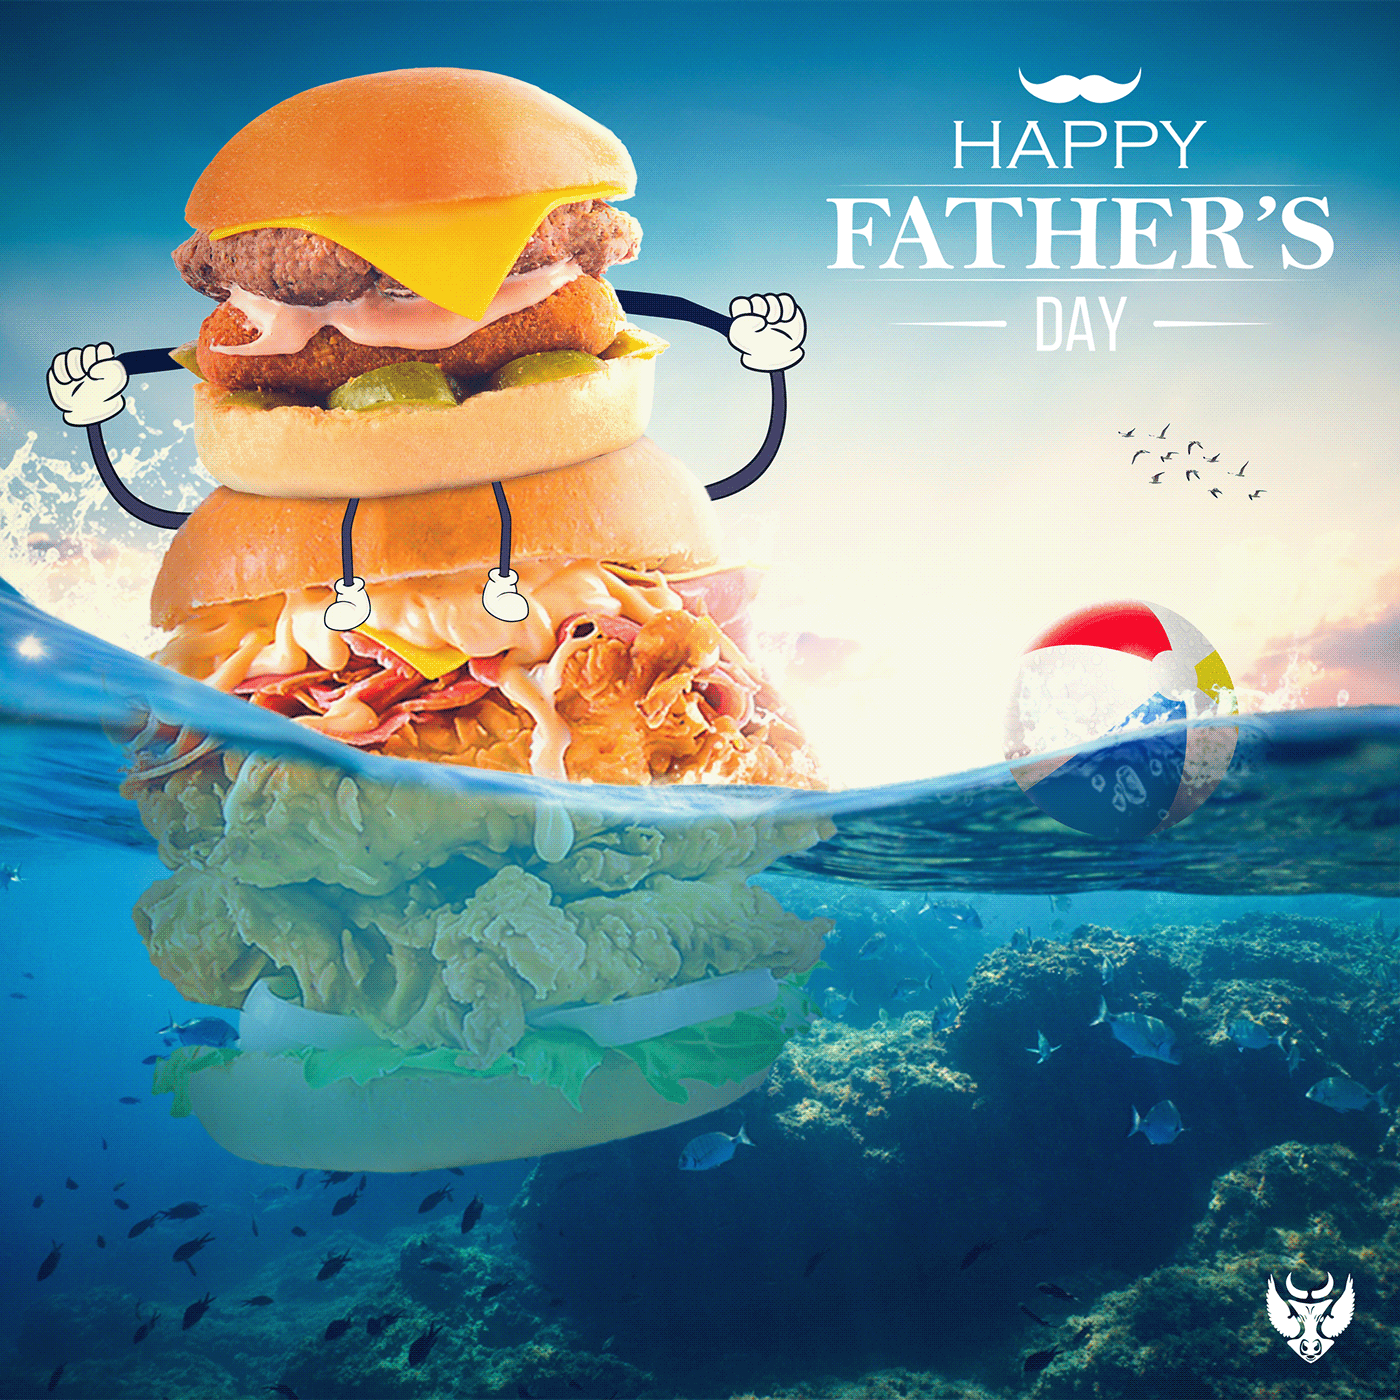 ads Advertising  burger designer Food  happy father's day marketing   social media Social media post Socialmedia